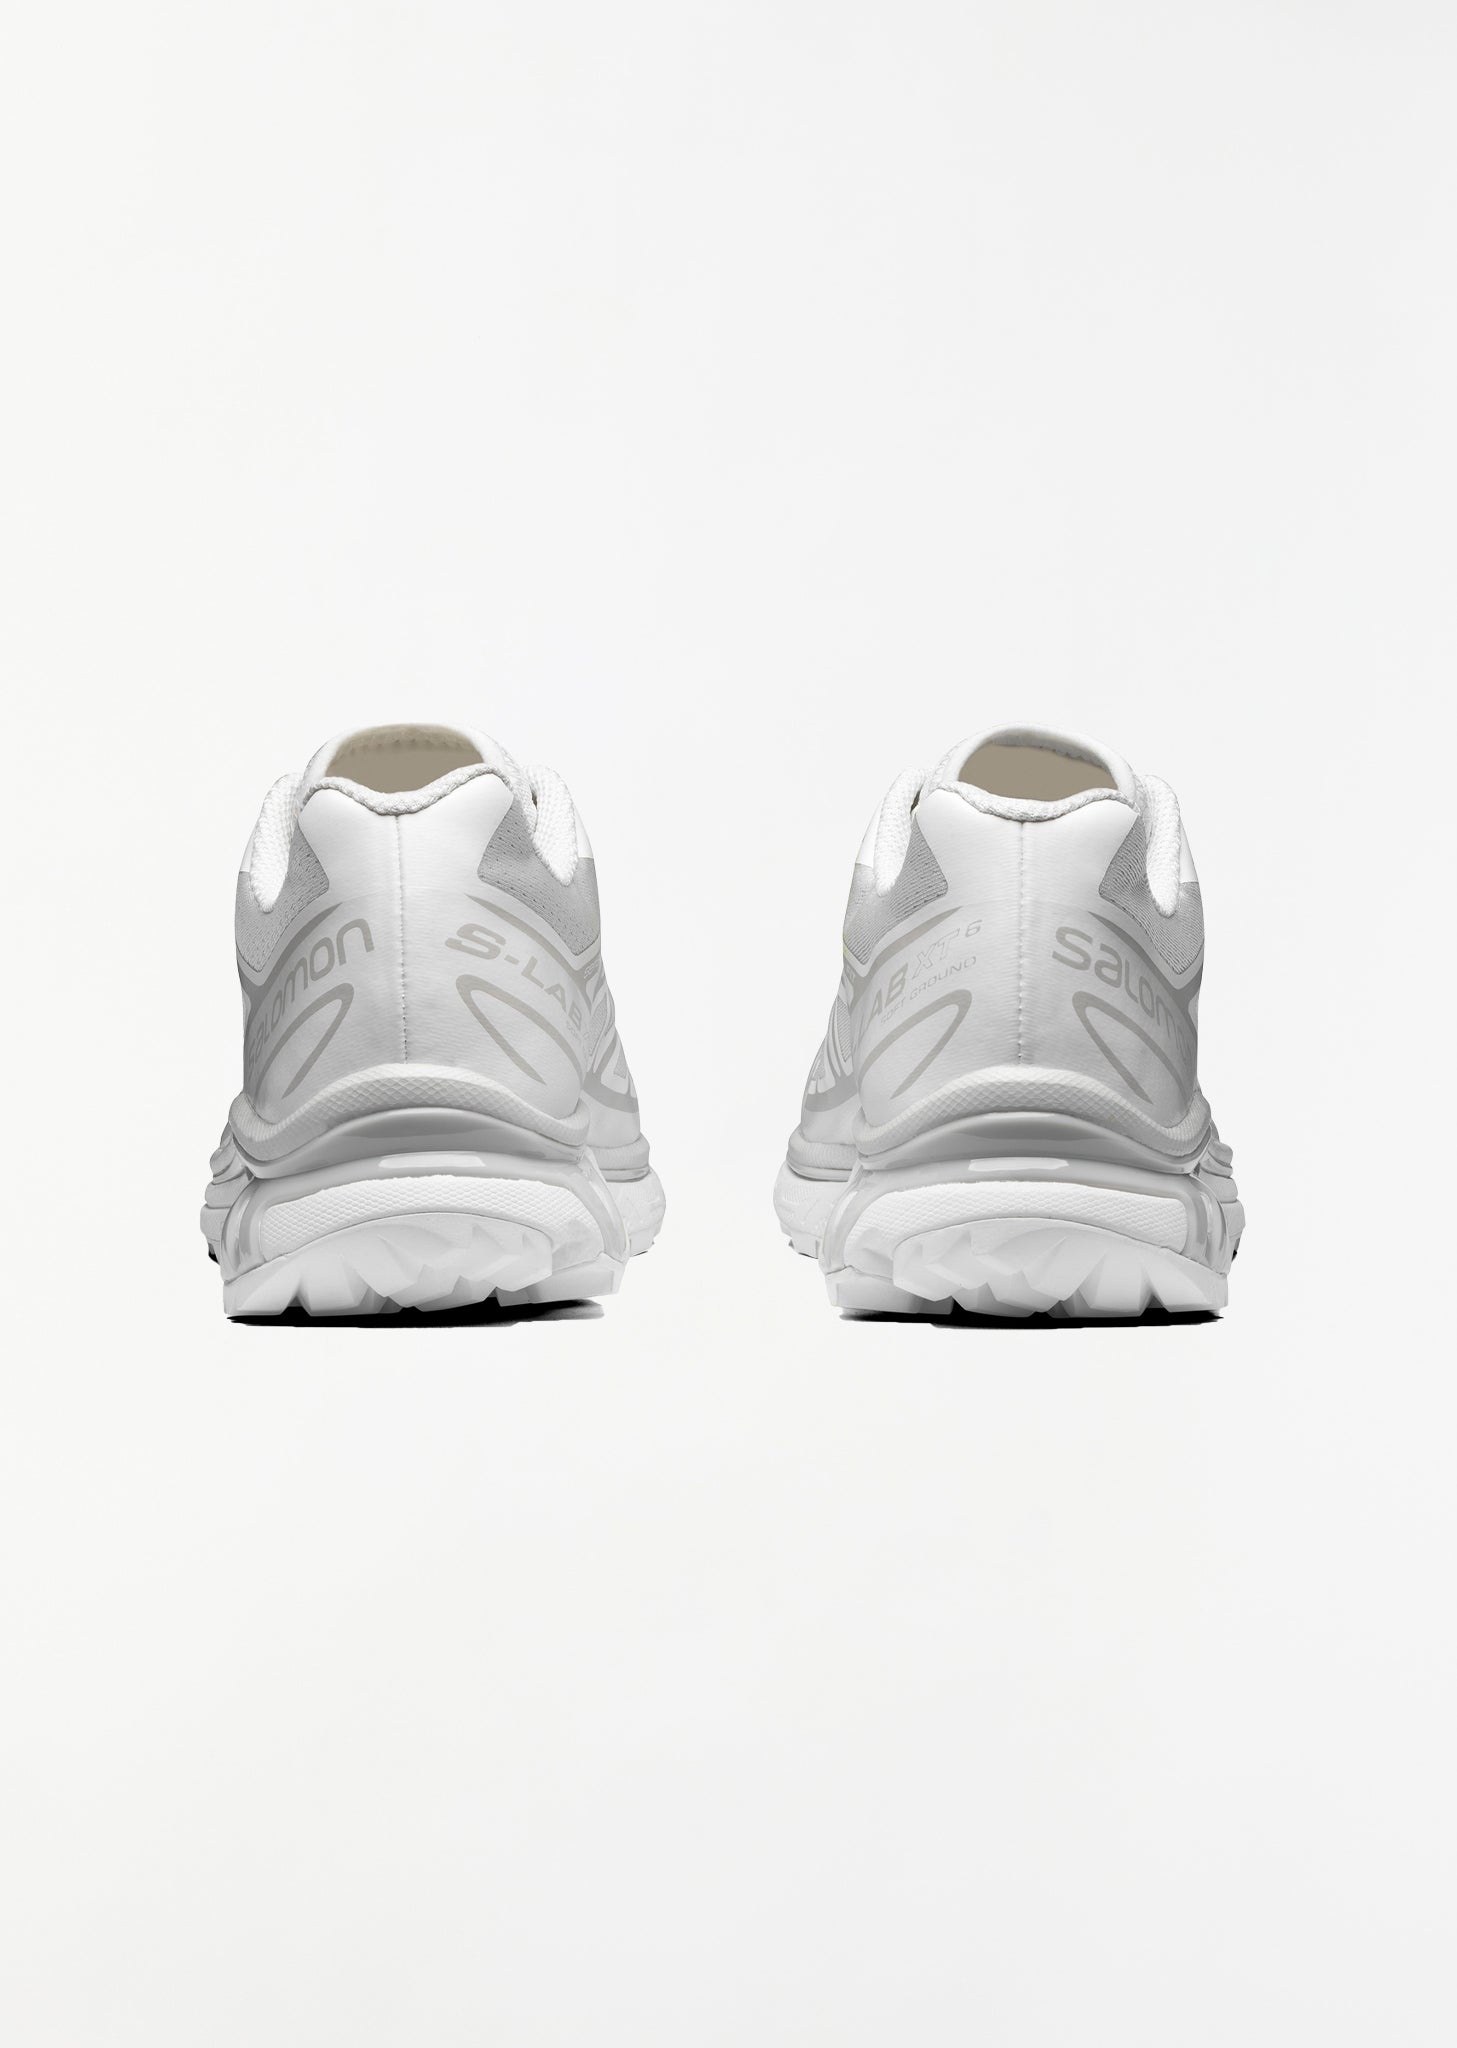 XT-6 — White/White/Lunar Rock Sneakers - 4